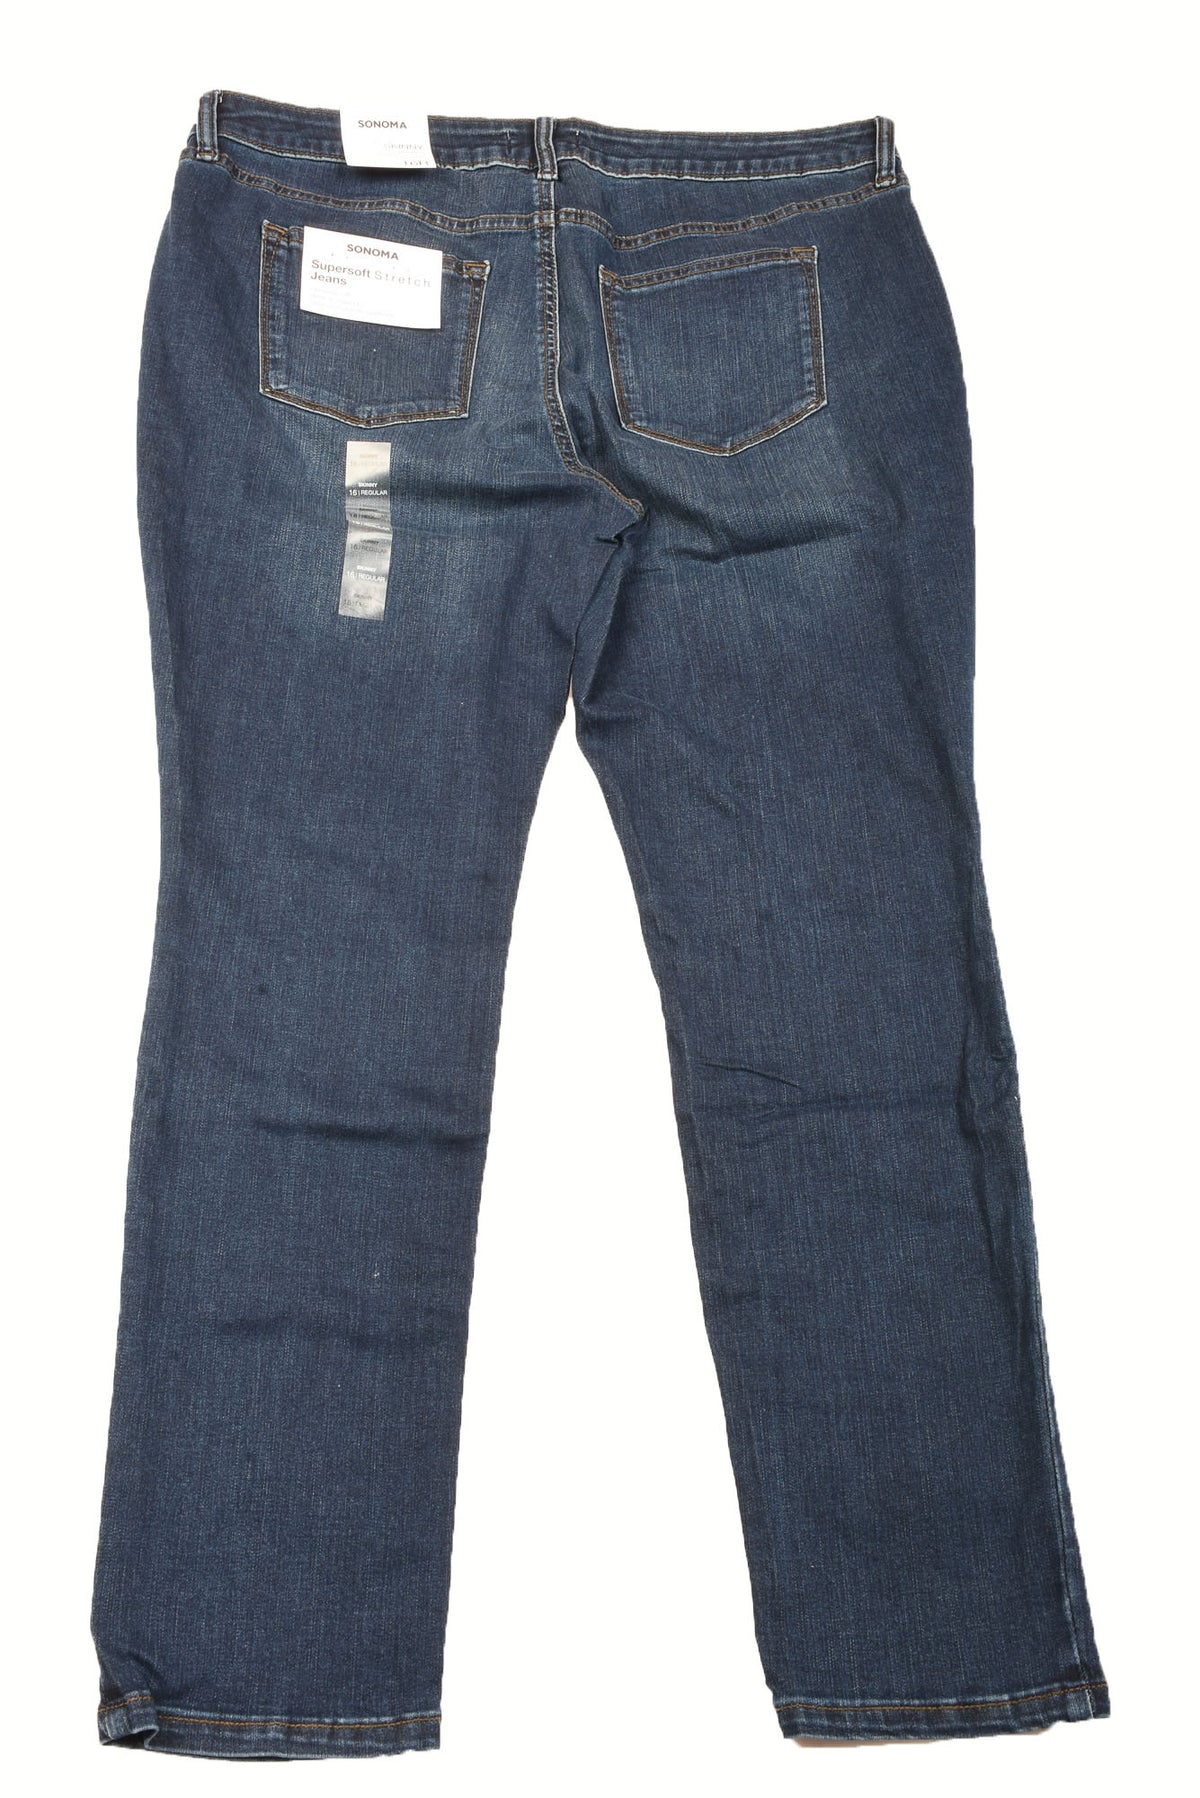 Sonoma Size 16 Women&#39;s Plus Jeans